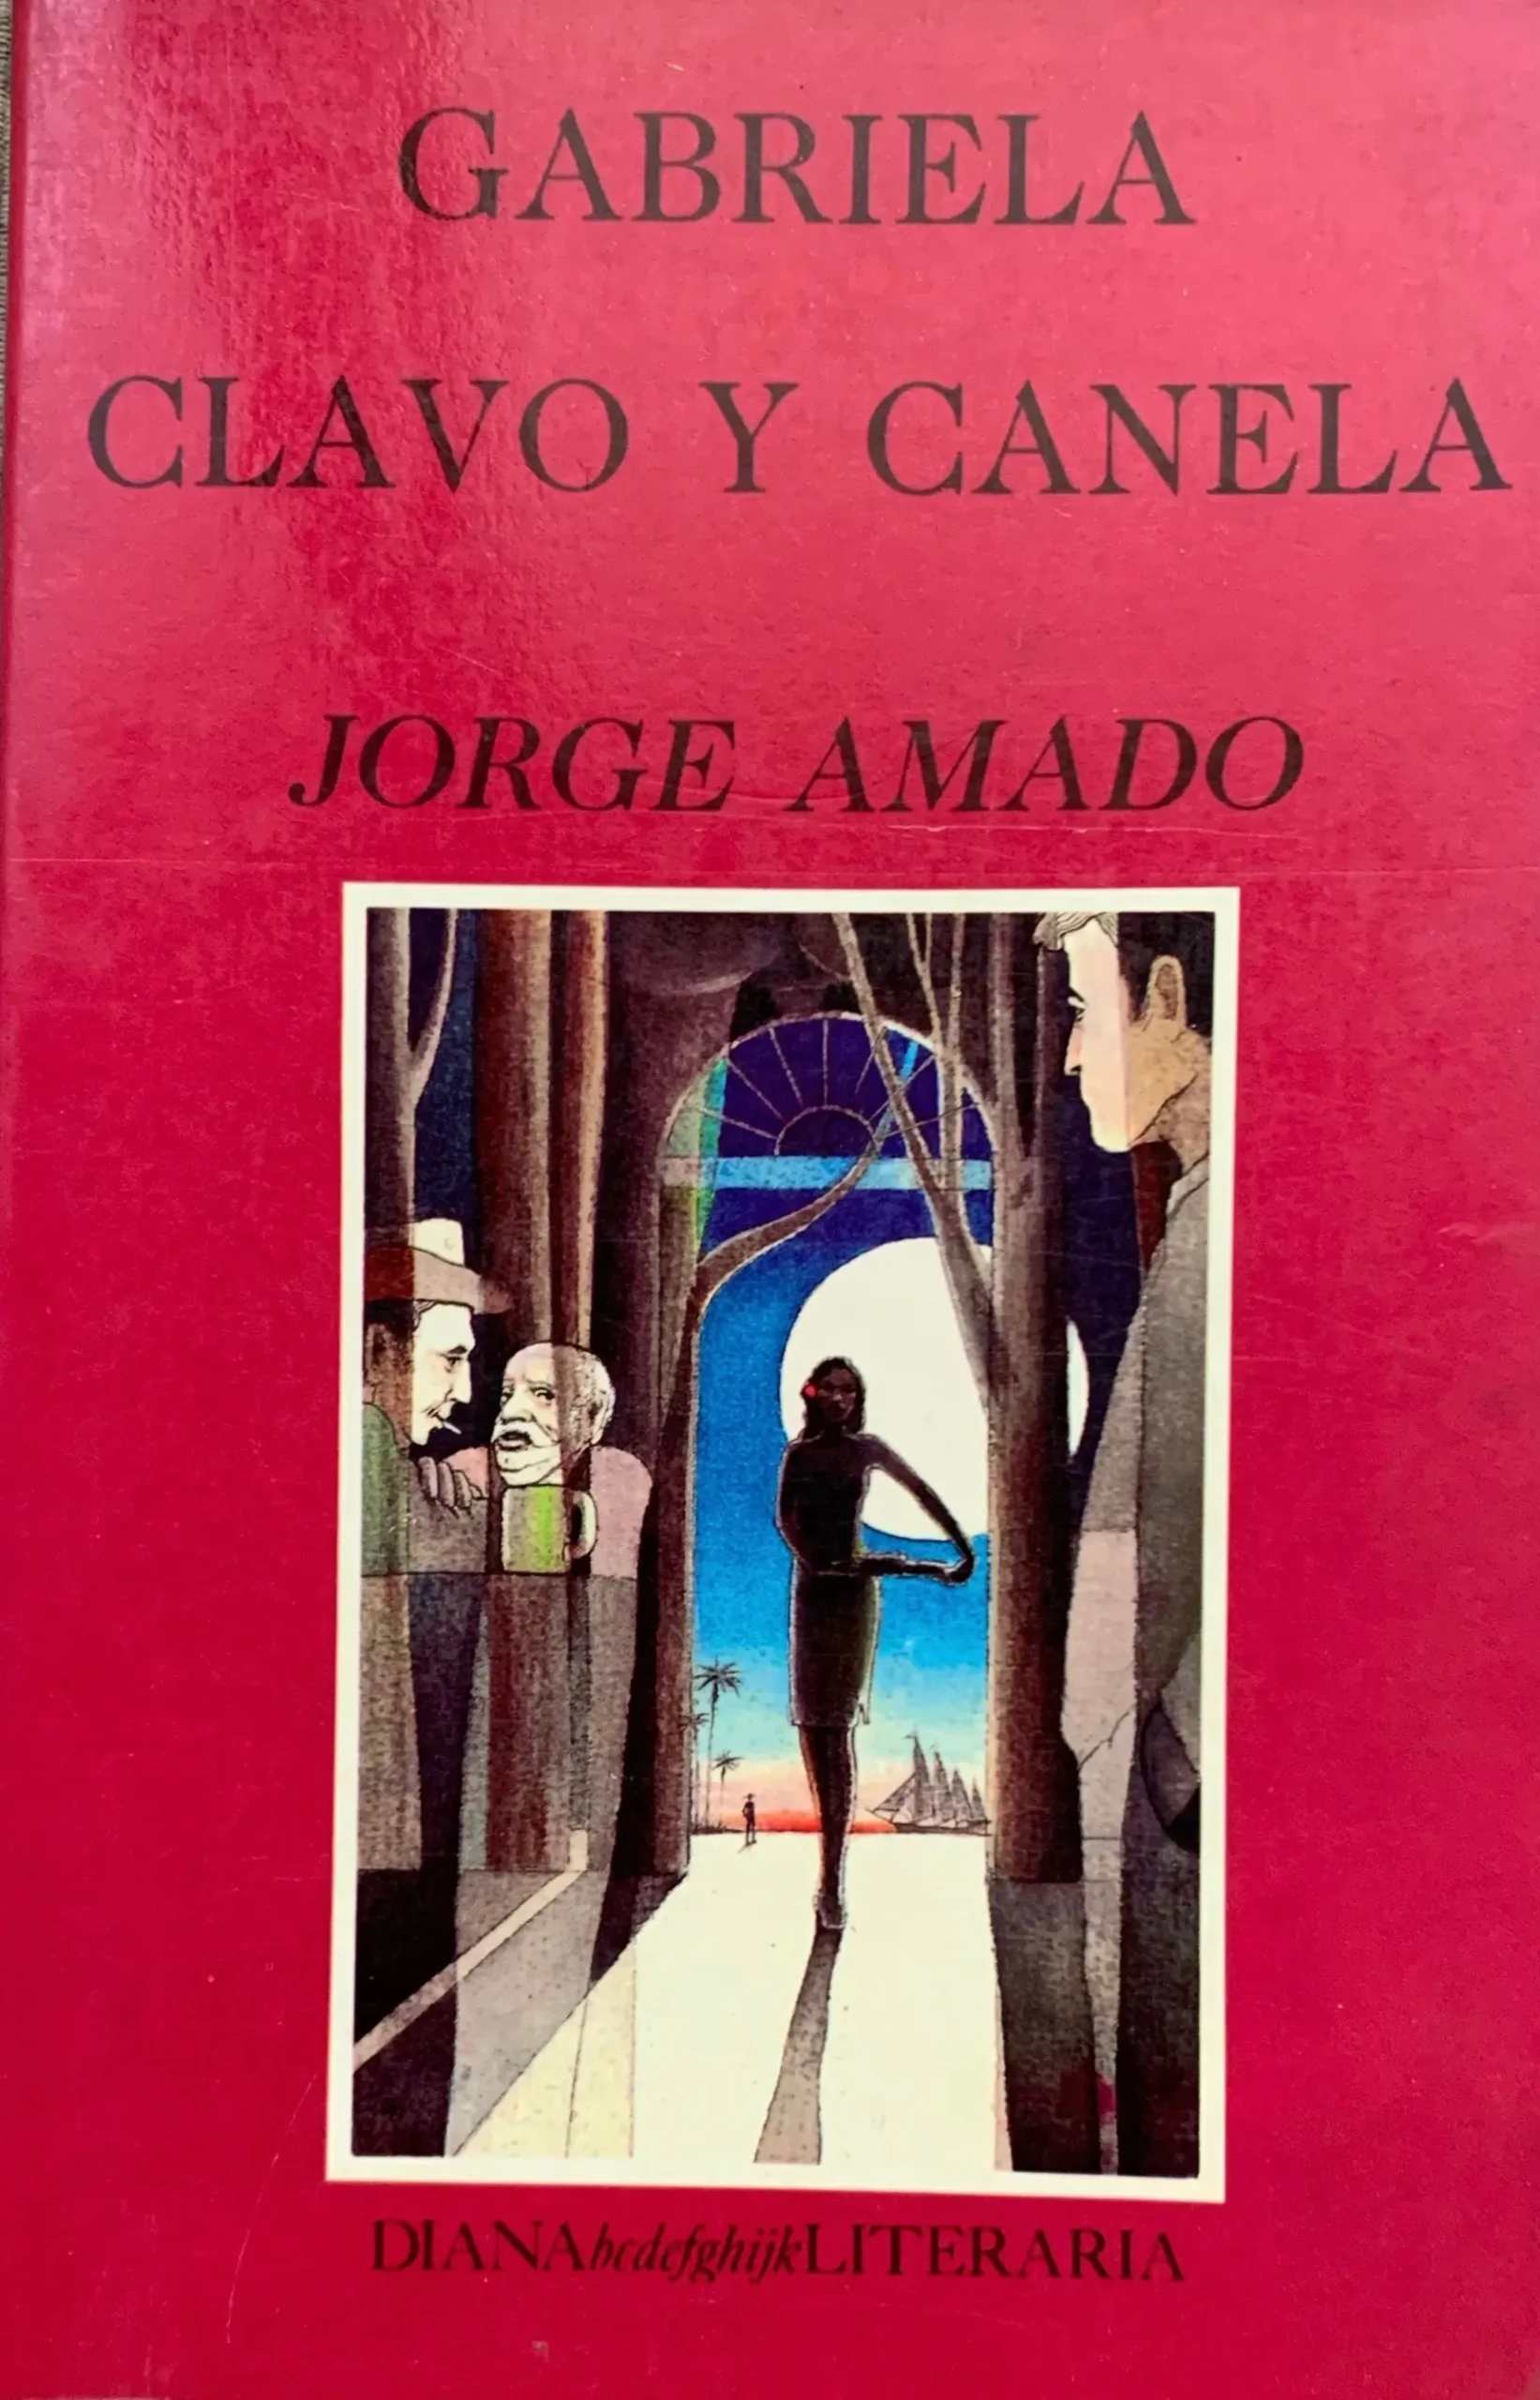 gabriela clavo y canela - Quién es el autor de la novela Gabriela clavo y canela